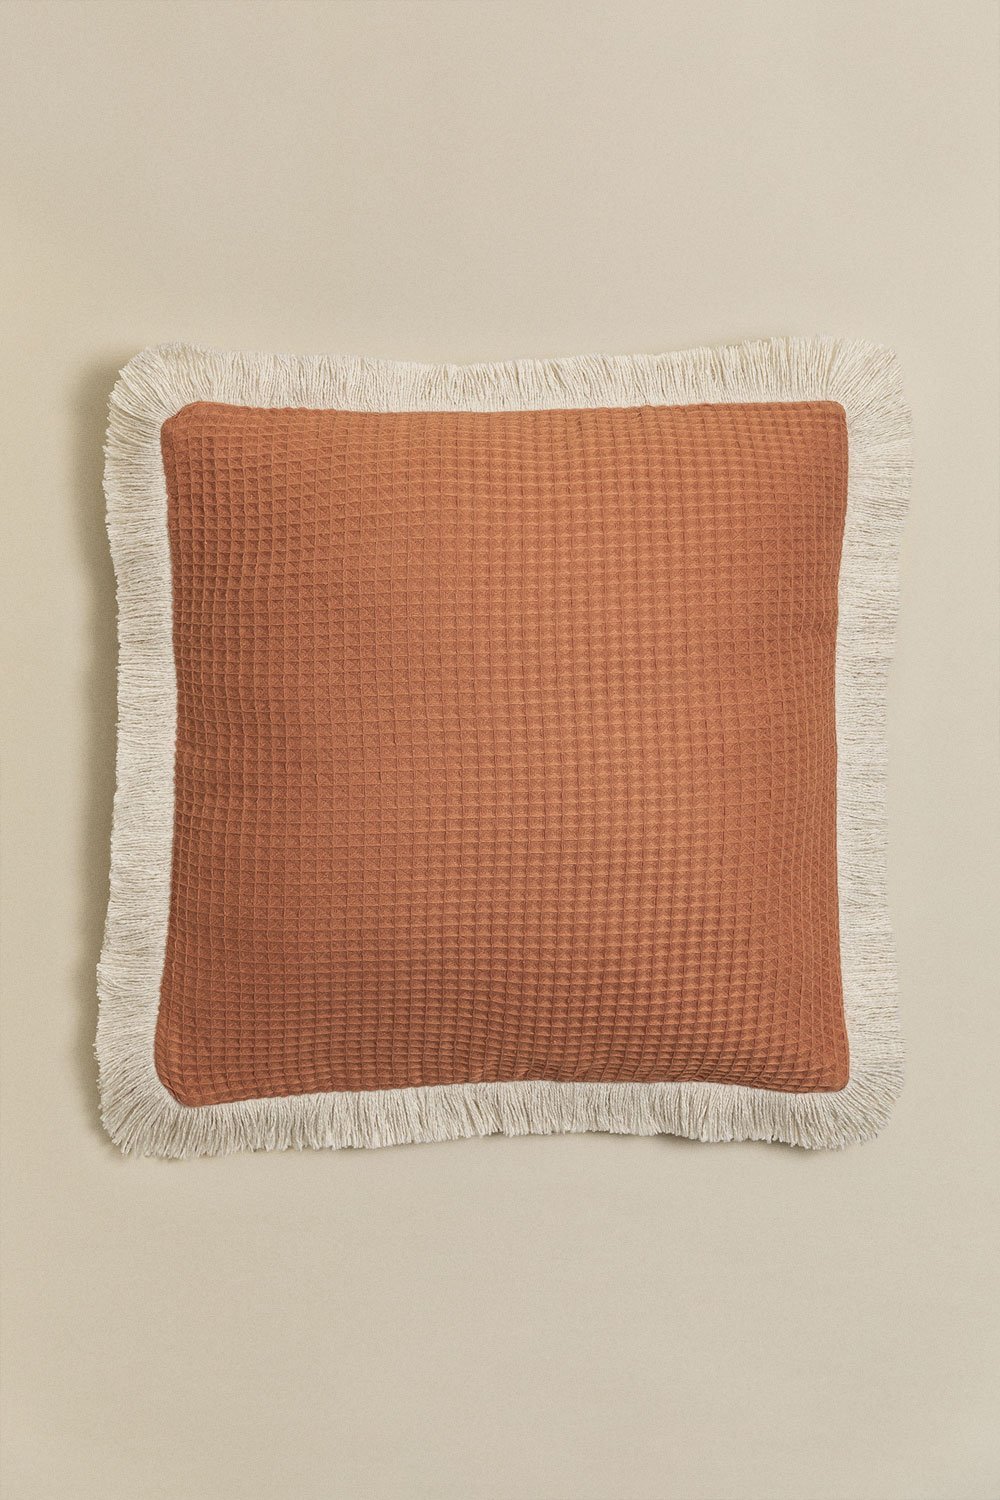 Cuscino quadrato in cotone (45x45 cm) Glenroi, immagine della galleria 1